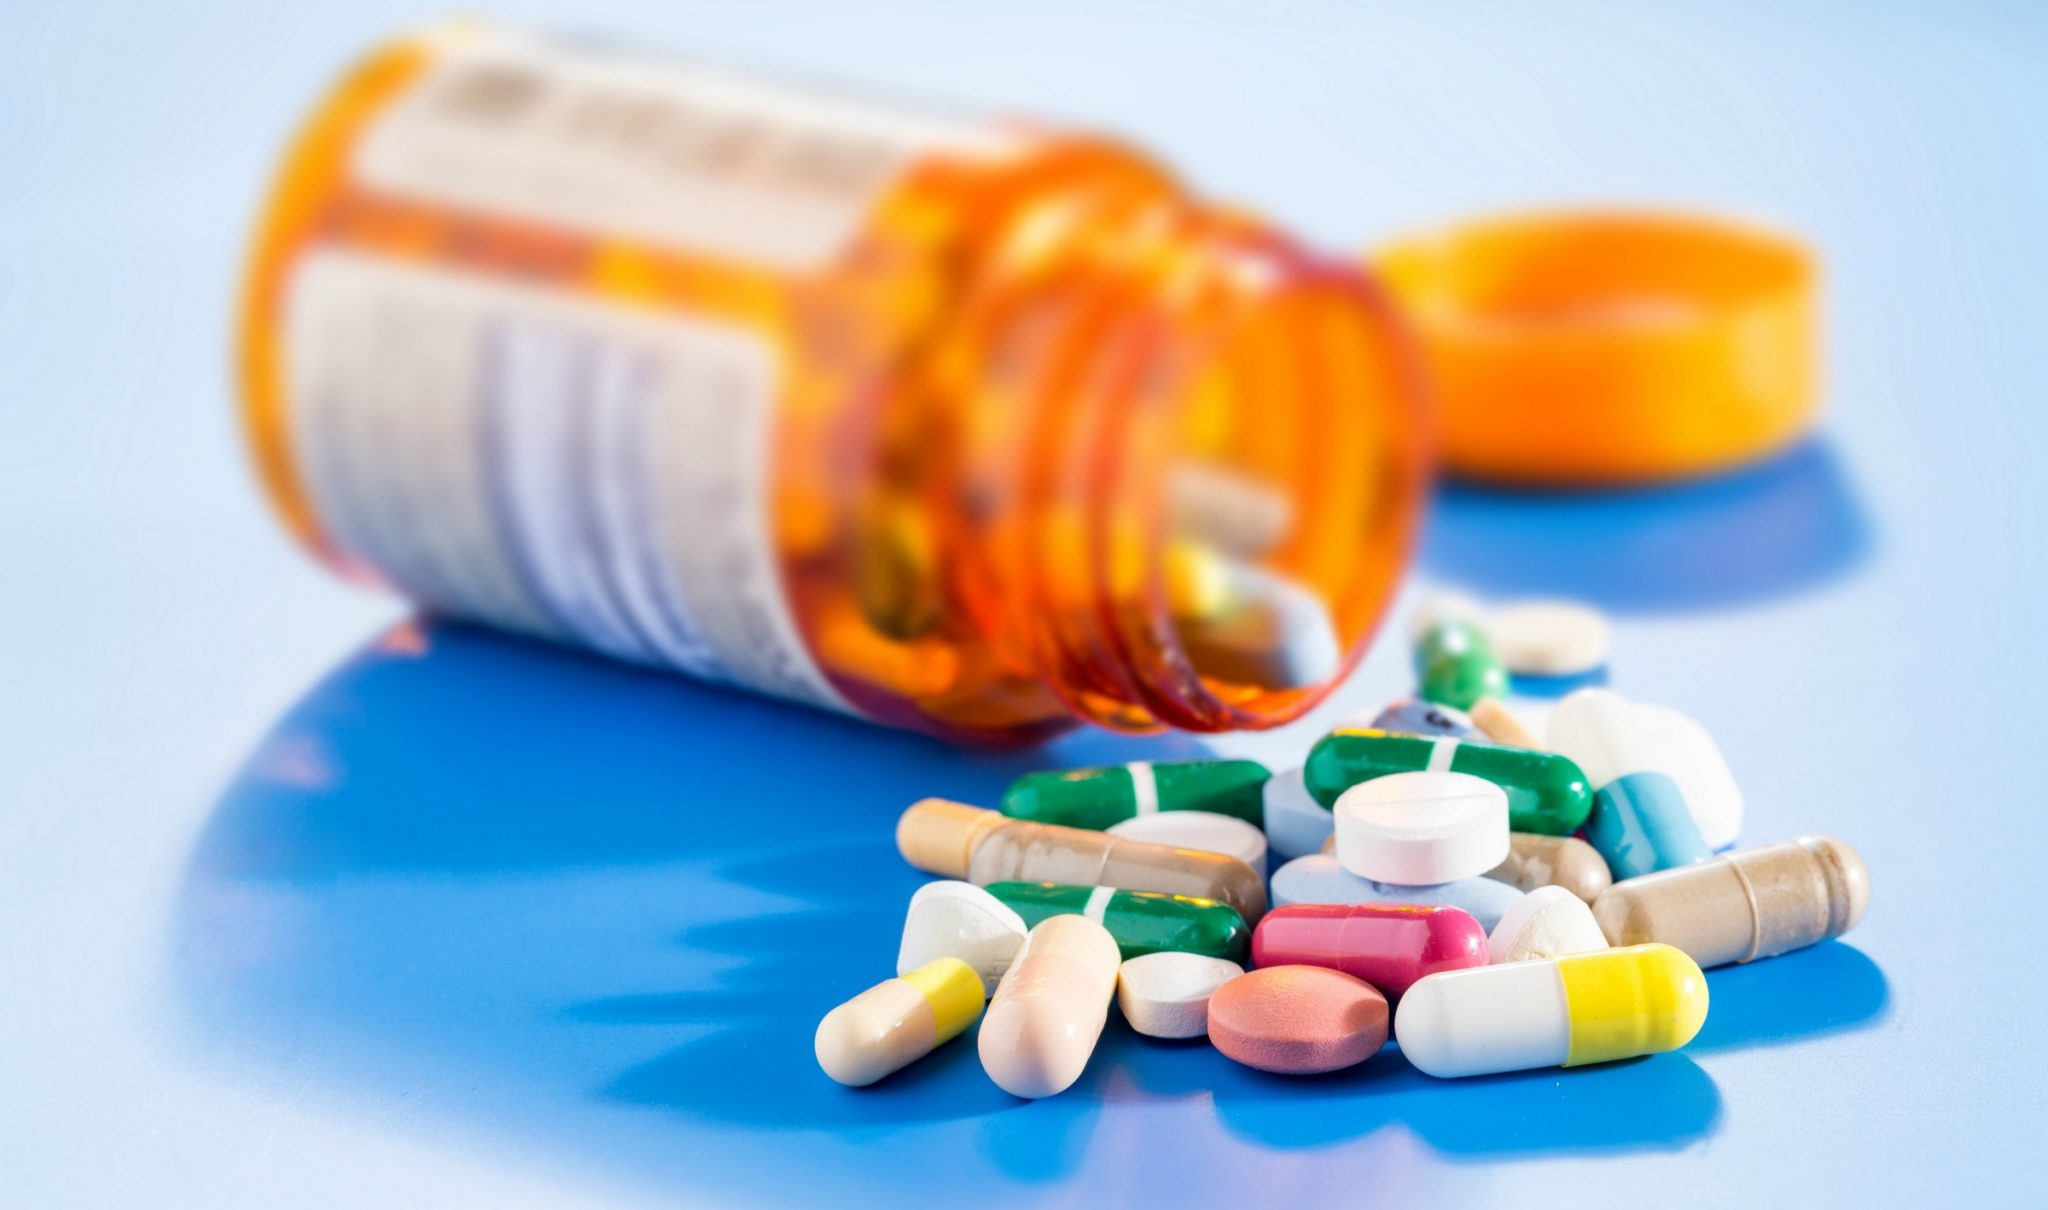 O STF definiu que o ISSQN incidirá sobre as operações realizadas por farmácias de manipulação que envolvam medicamentos manipulados sob encomenda.